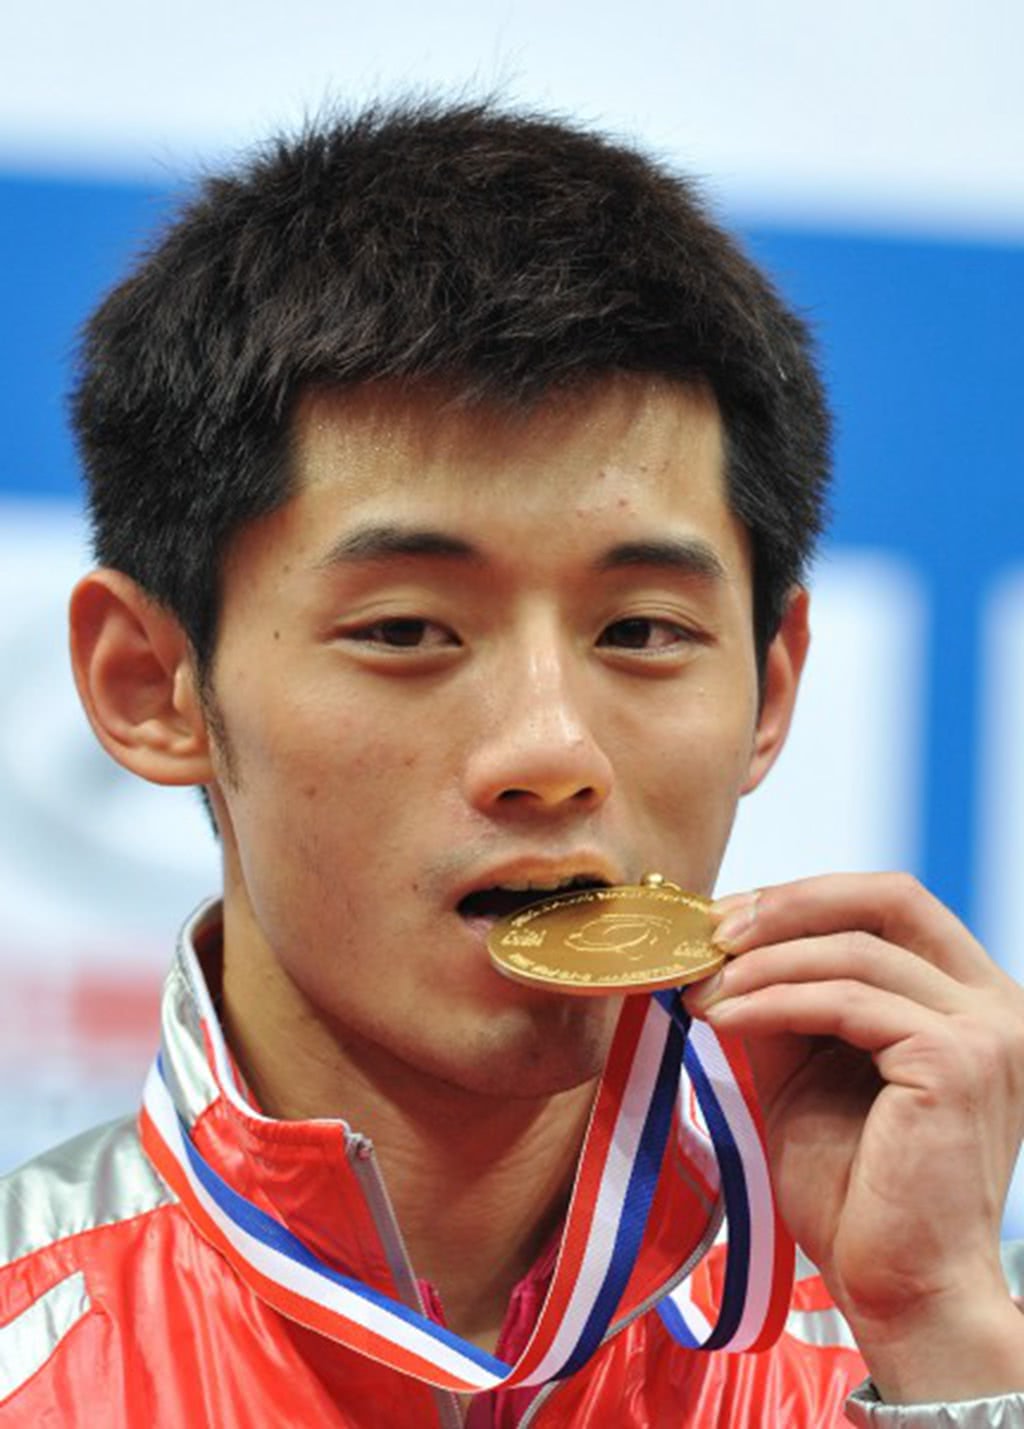 张继科,是中国男子乒乓球队运动员.